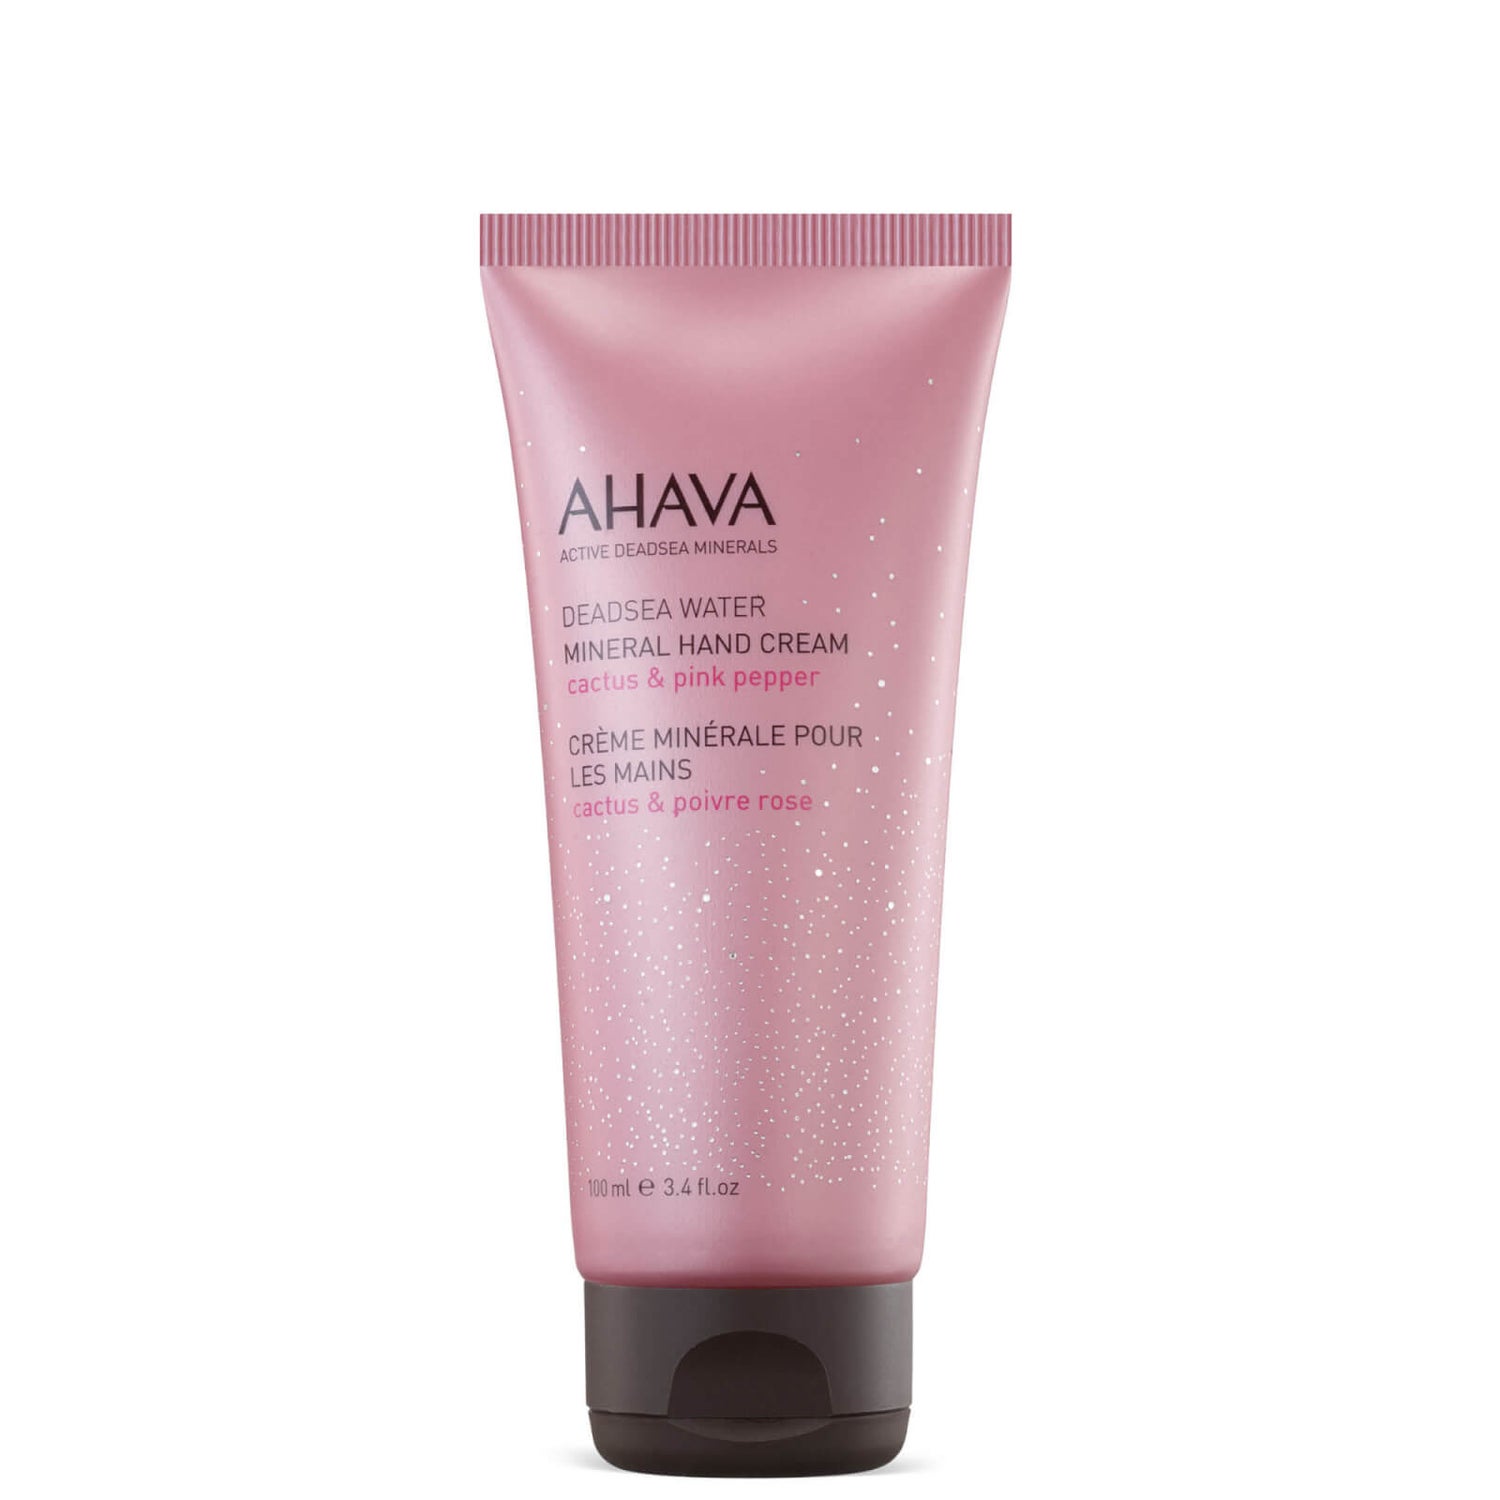 Crema de manos Mineral de AHAVA - Cactus y pimienta rosa